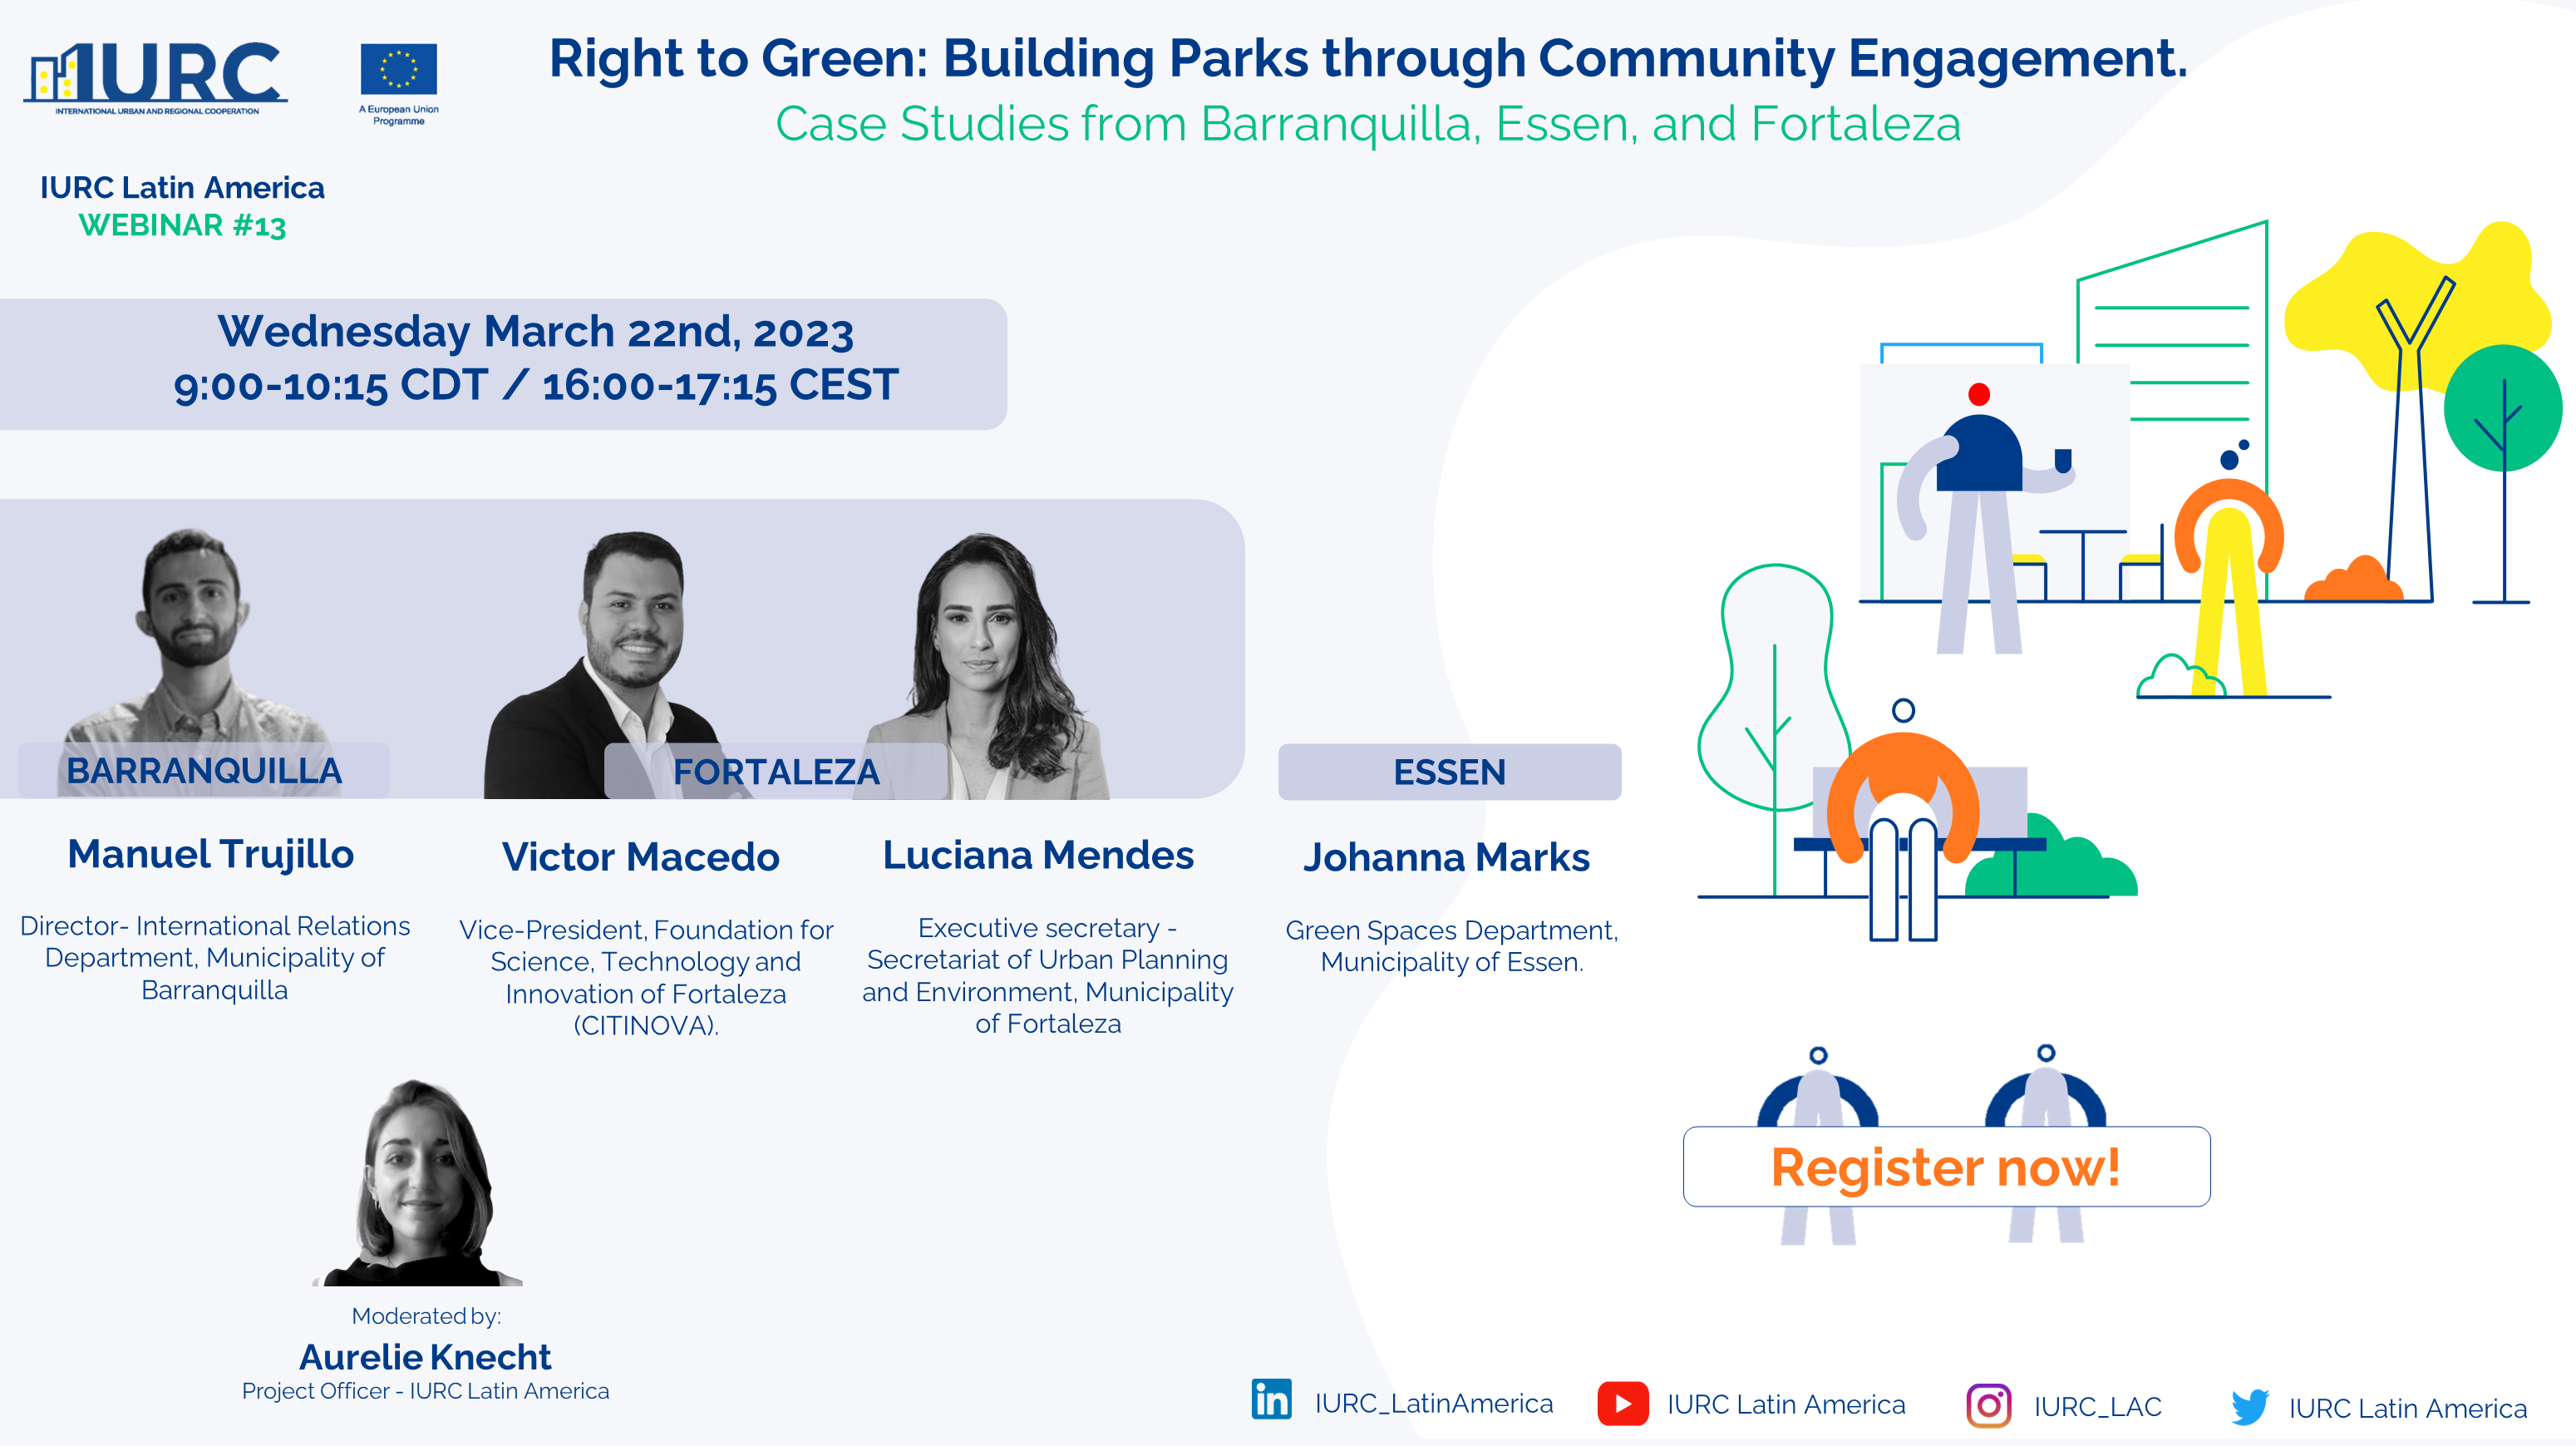 Webinar 13. Derecho al verde: Construir parques mediante la participación de la comunidad. Estudios de caso de Barranquilla, Essen y Fortaleza